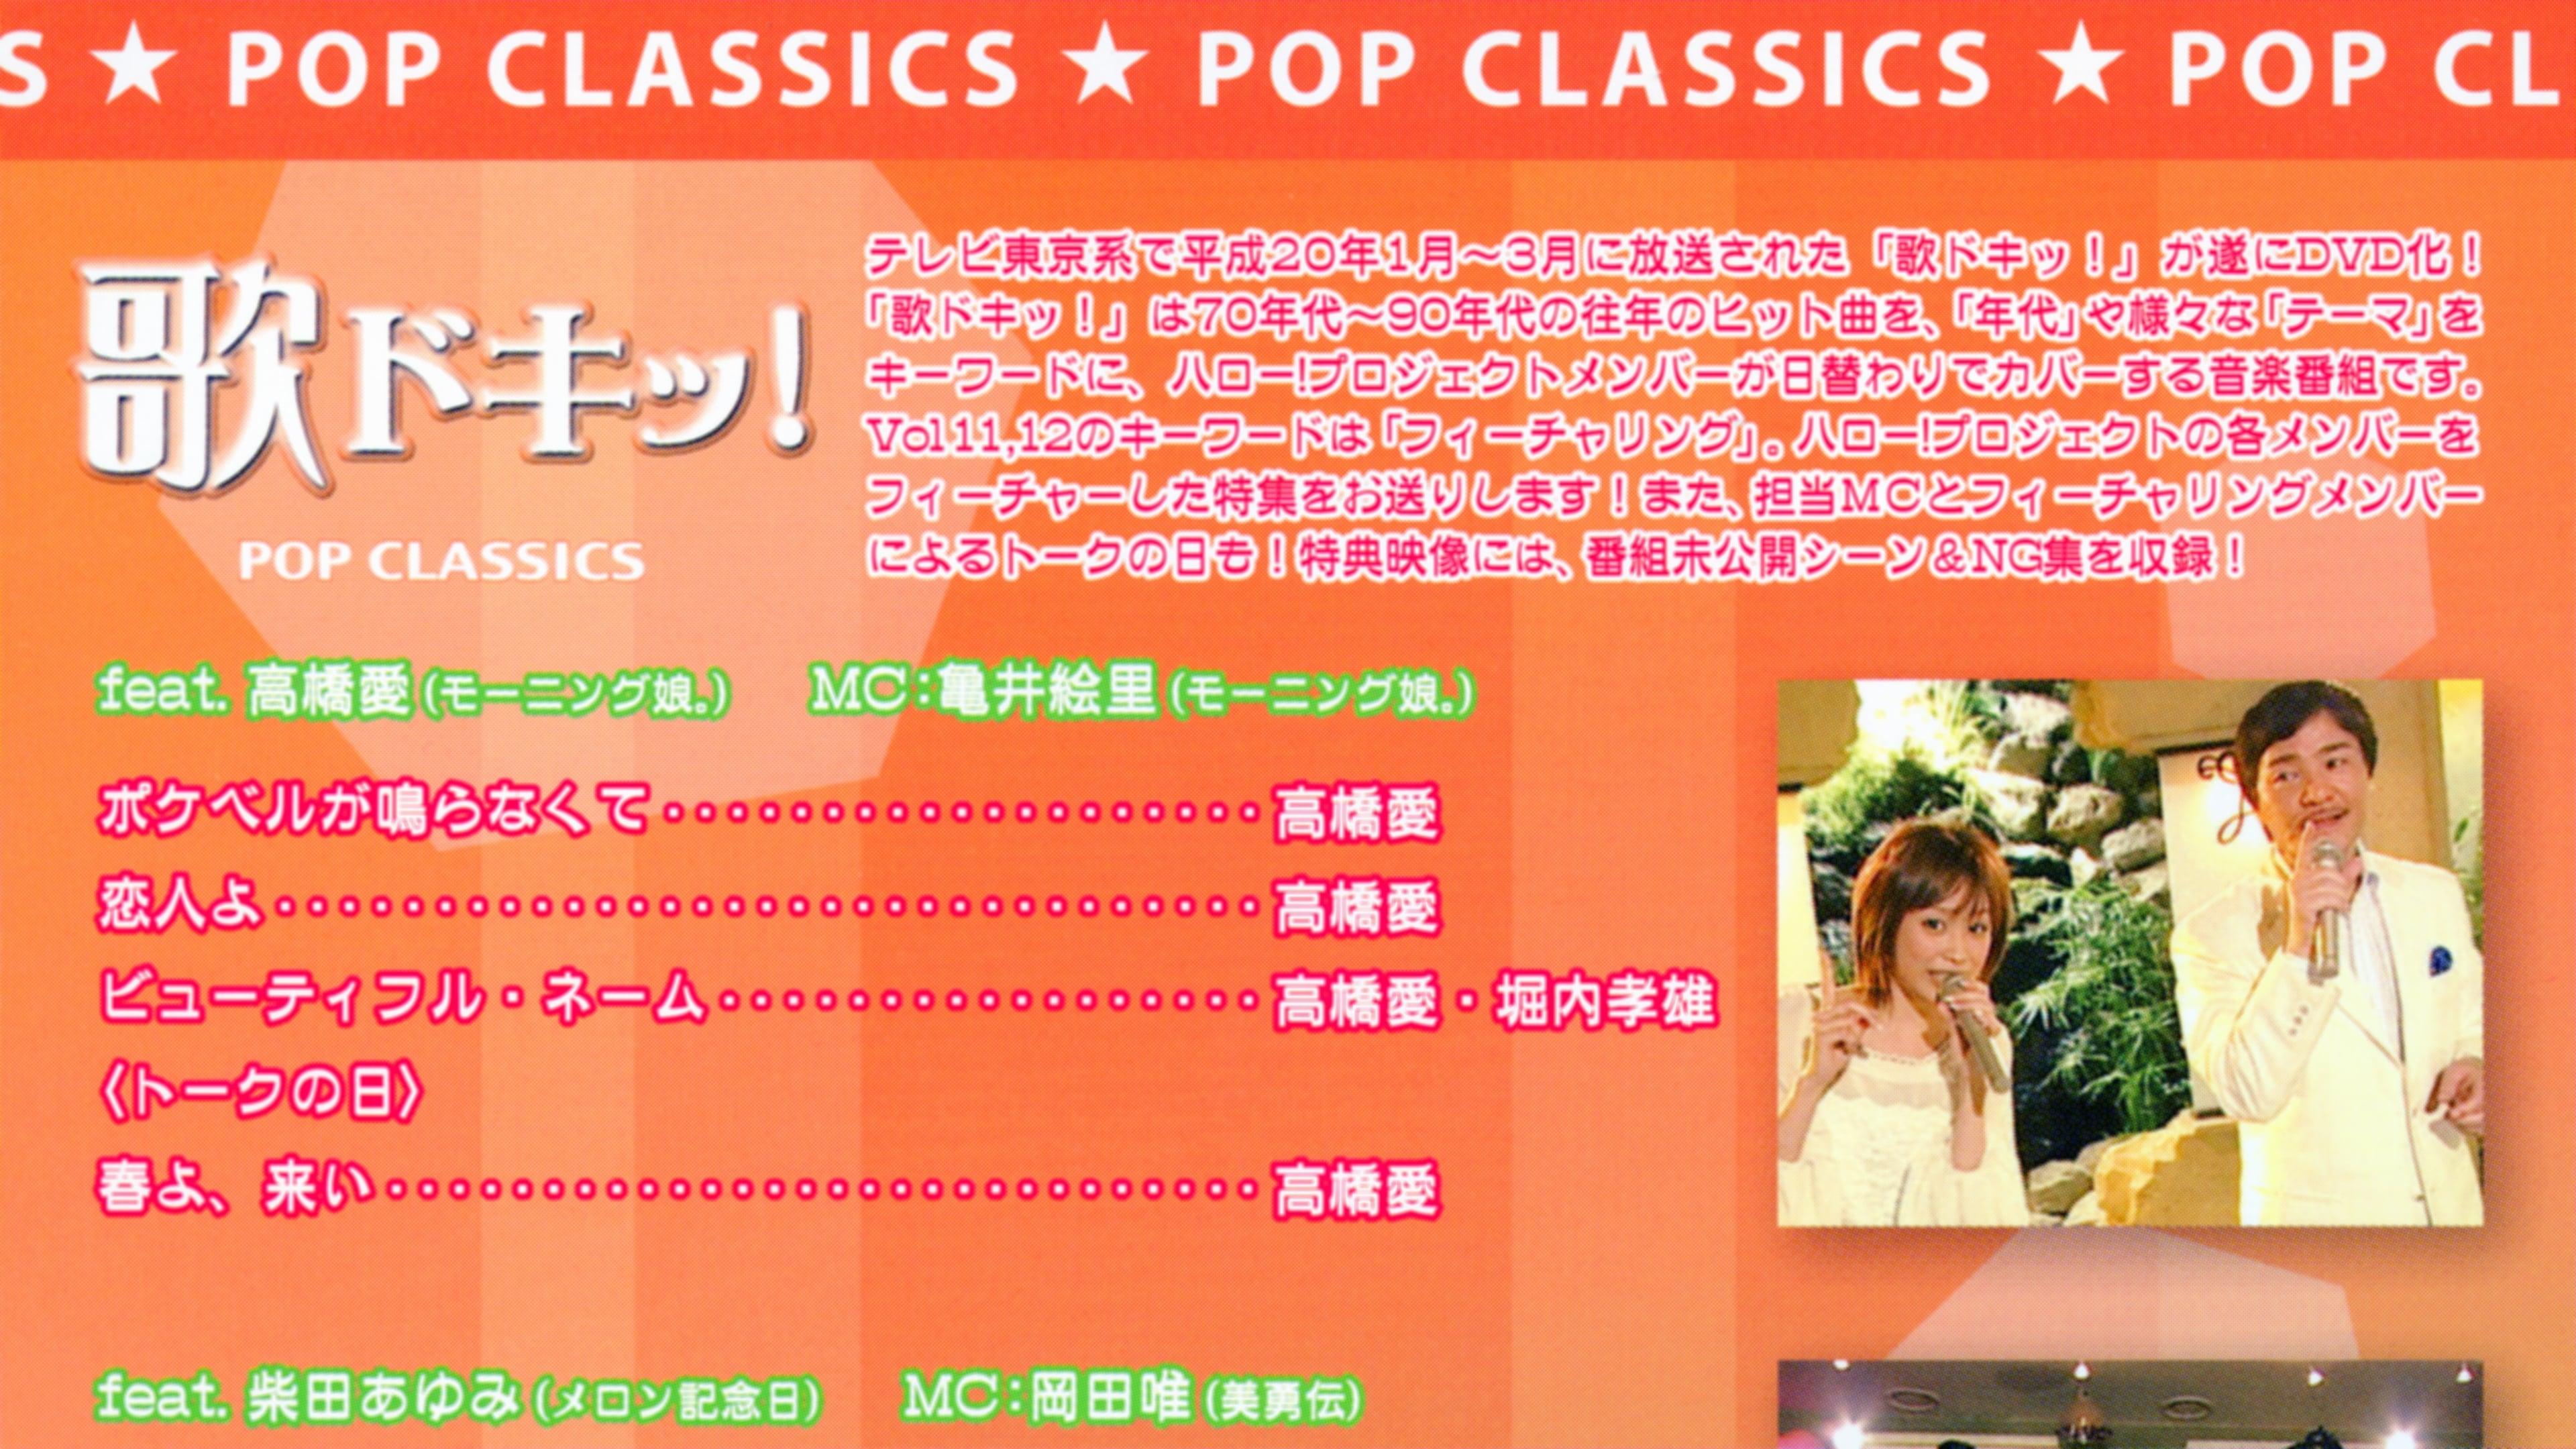 Uta Doki! Pop Classics Vol.11 backdrop